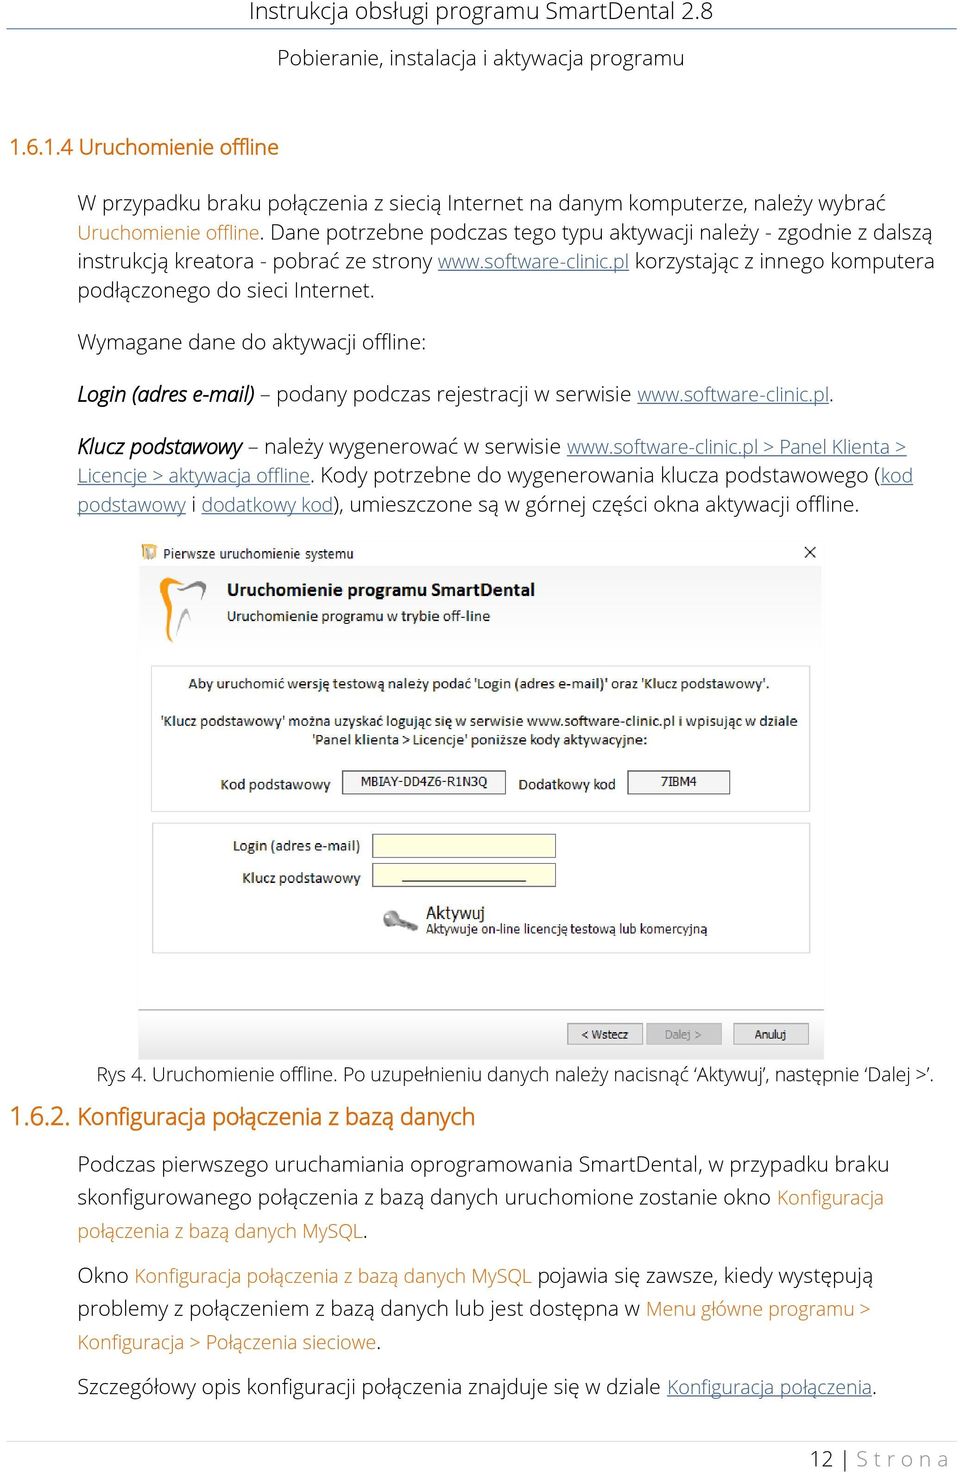 Wymagane dane do aktywacji offline: Login (adres e-mail) podany podczas rejestracji w serwisie www.software-clinic.pl. Klucz podstawowy należy wygenerować w serwisie www.software-clinic.pl > Panel Klienta > Licencje > aktywacja offline.